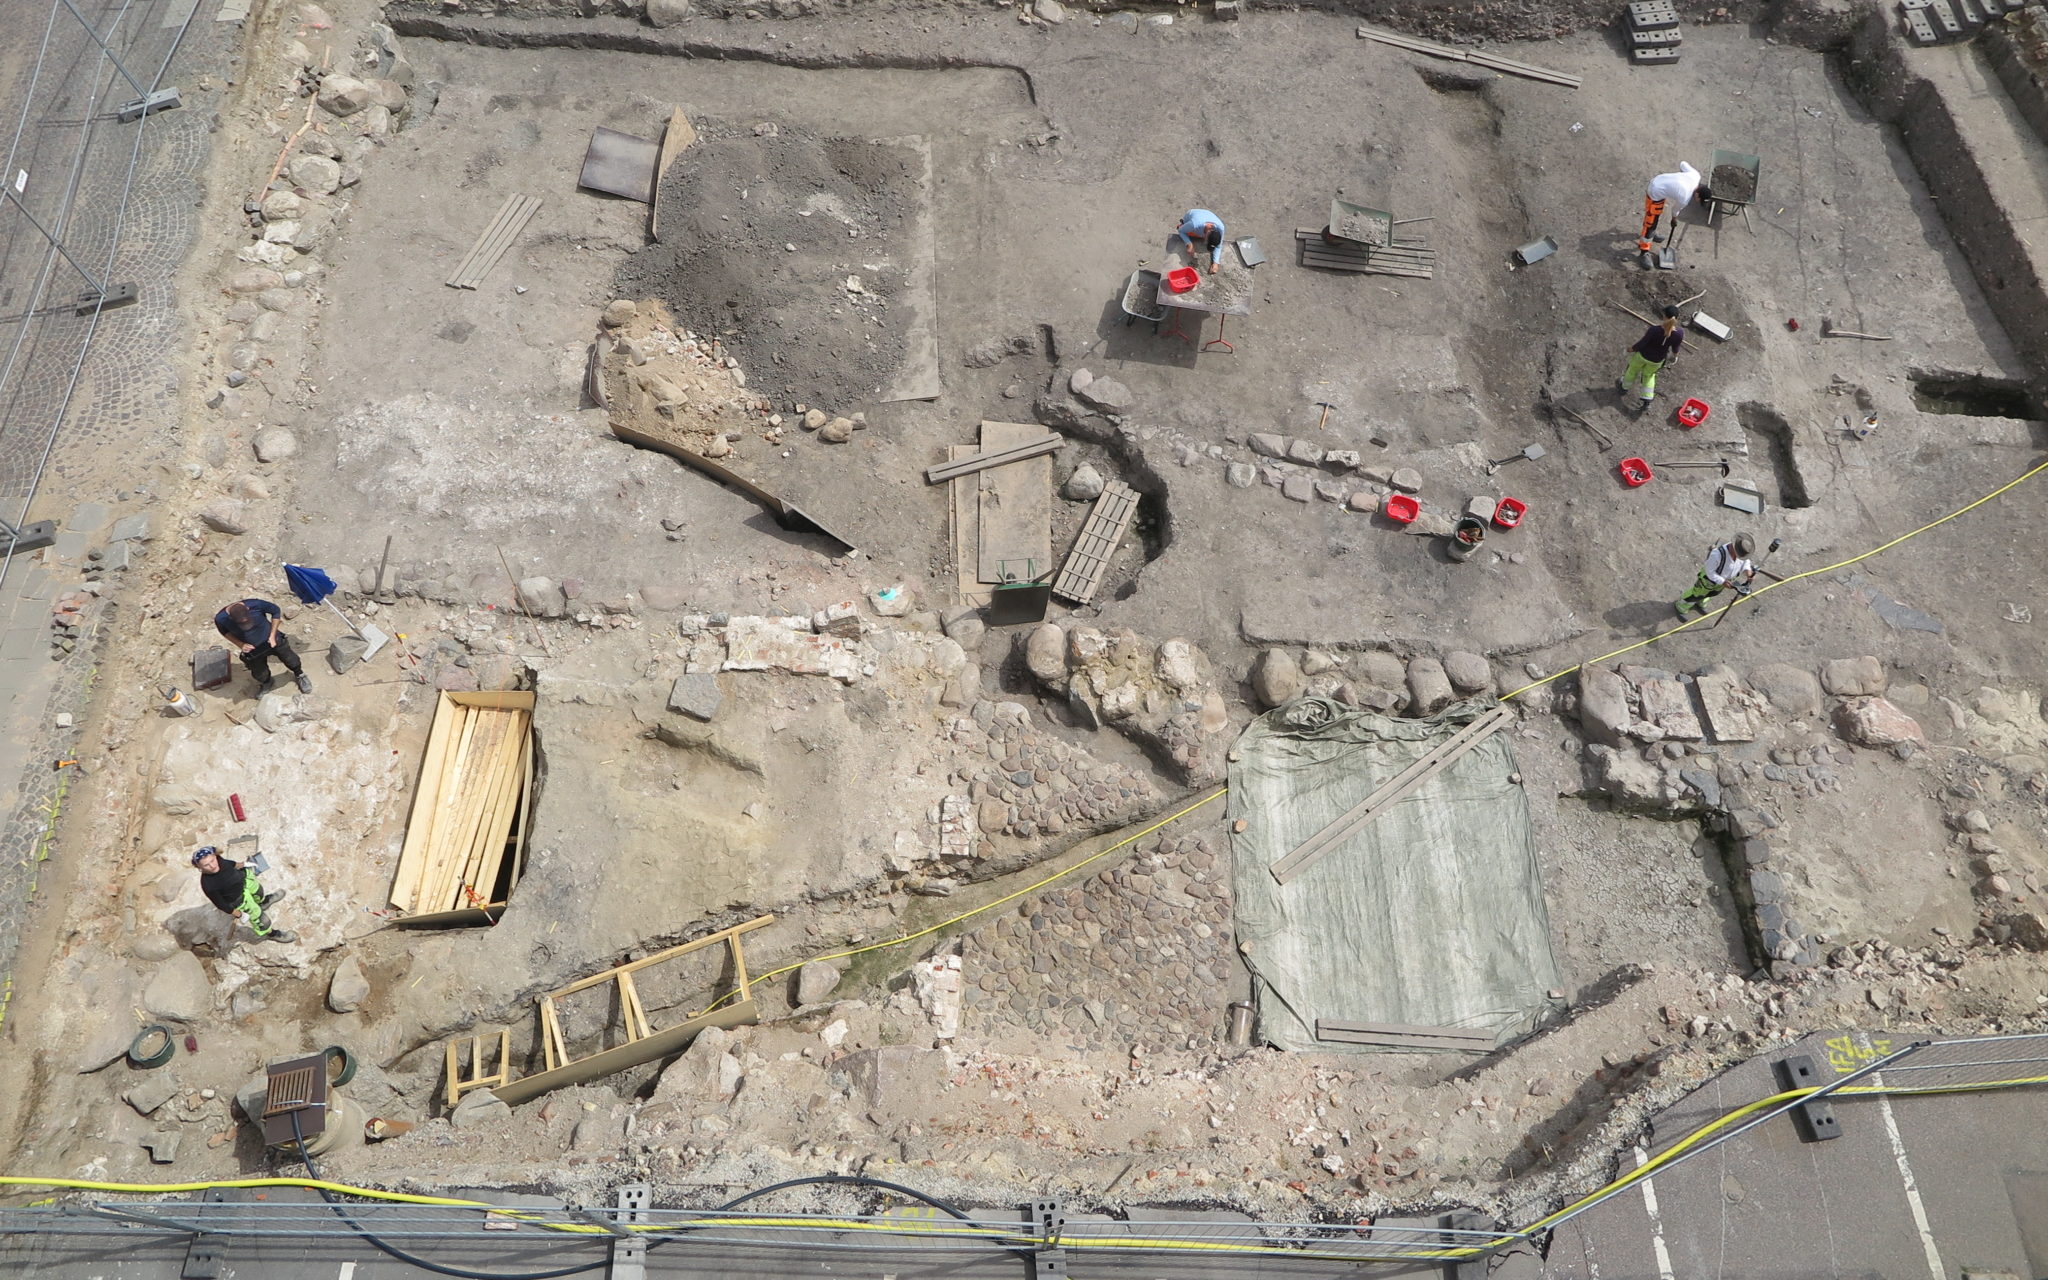 2019 gjordes en arkeologisk undersökning i kvarteret Sankt Mikael i Lund. Undersökningsplatsen är en del av det område där det tidigaste Lund började växa fram. Fynd och fragmentariskt bevarade byggnadslämningar samt en stor mängd avfallsgropar, som använts under lång tid, tyder på att kvarteret Sankt Mikael var bebyggt redan runt år 1000.